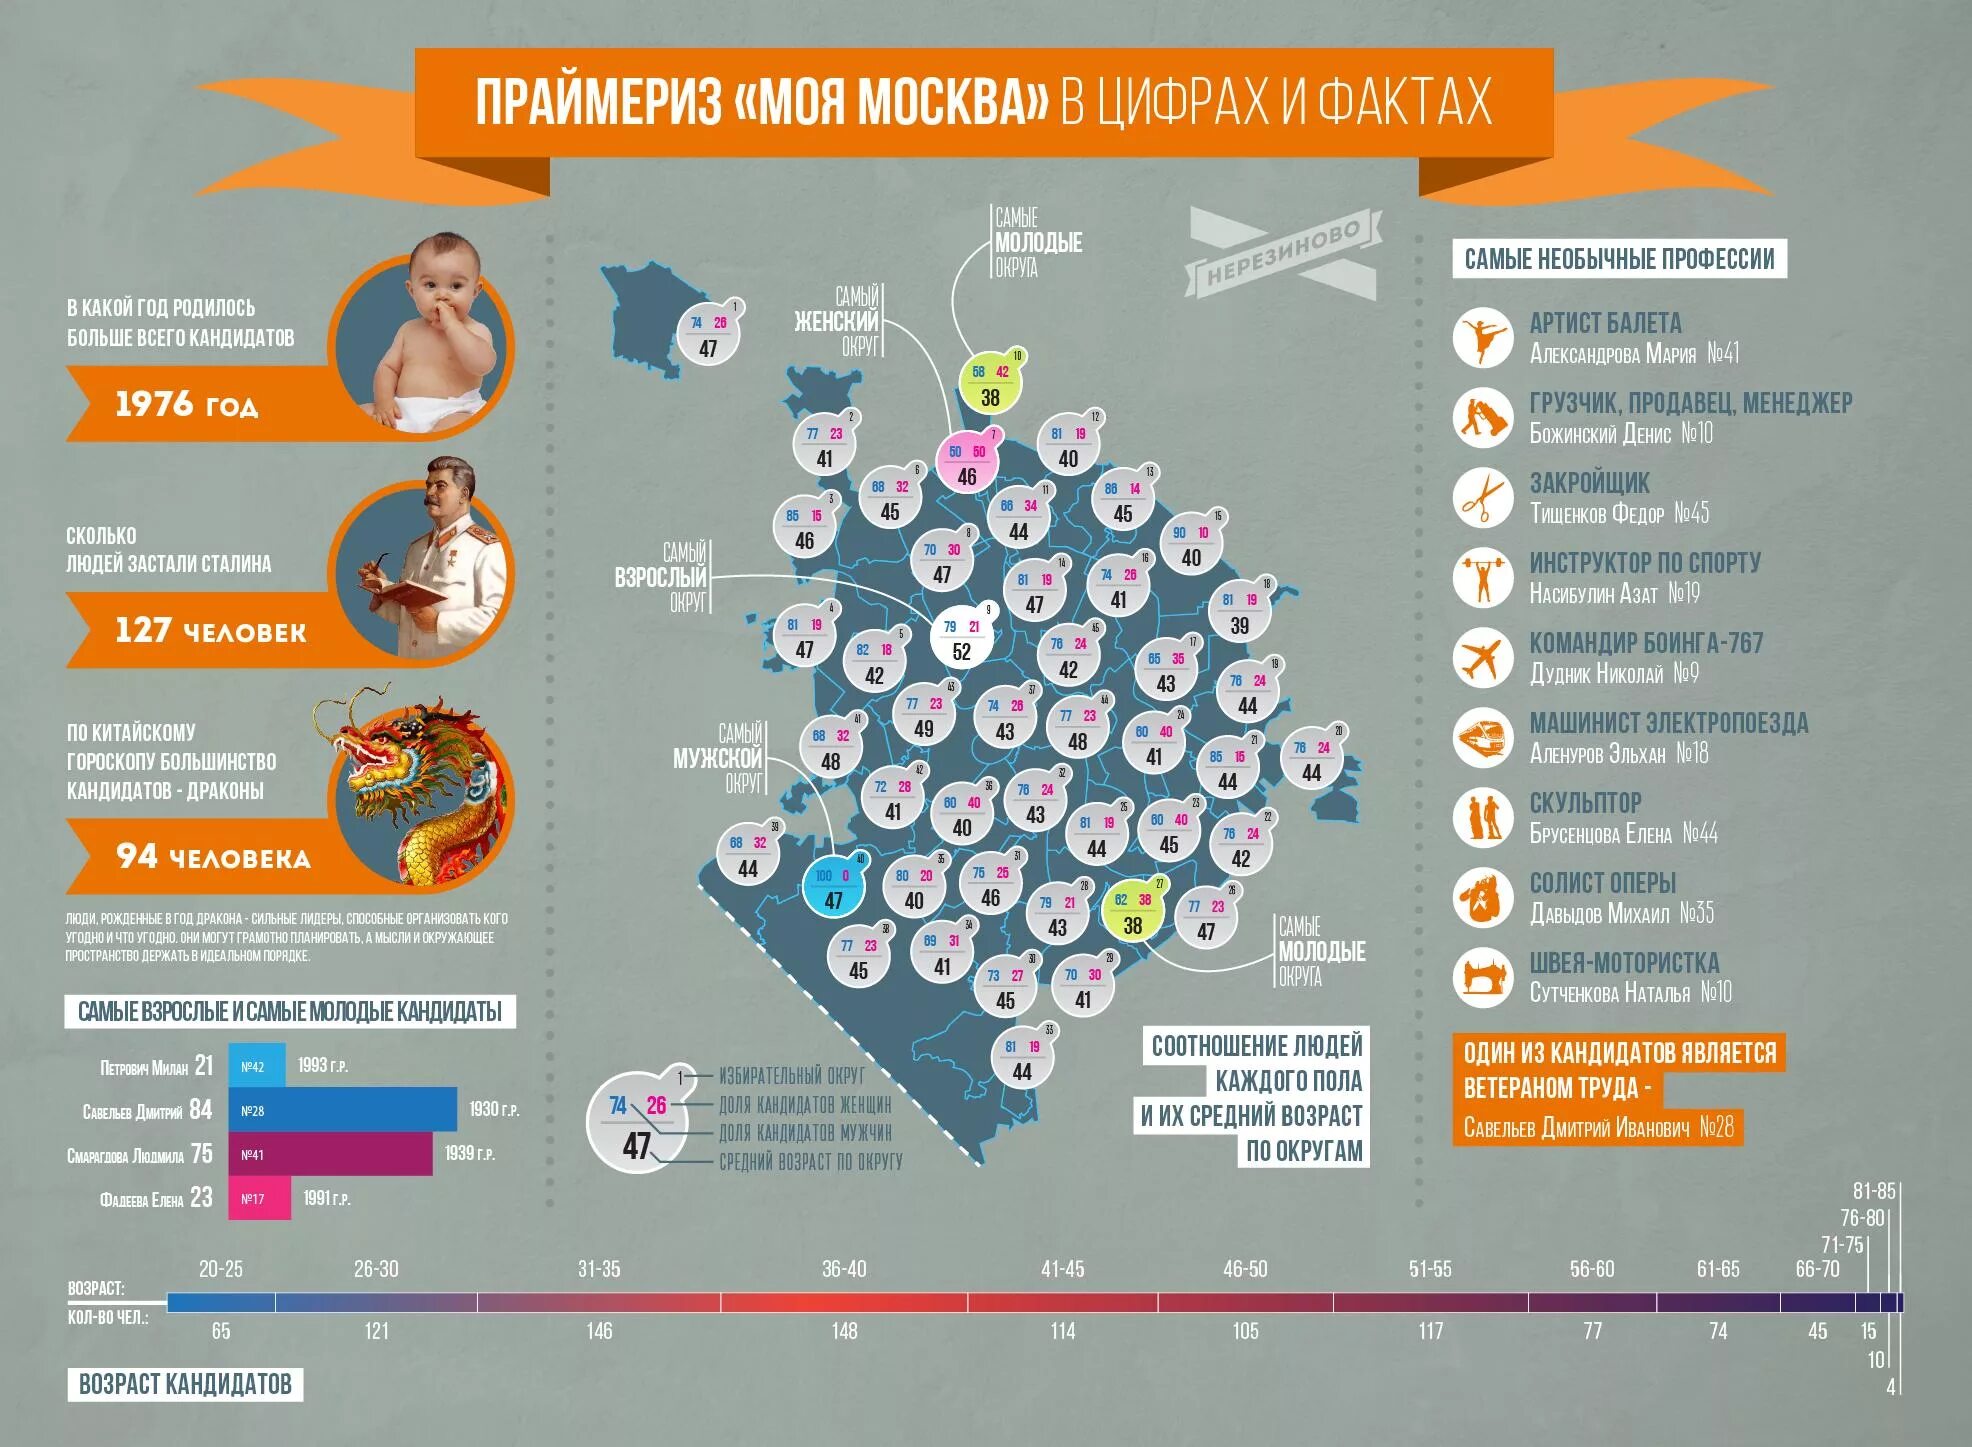 Интересная инфографика. Интересная статистика о Москве. Инфографика цифры и факты. Интересные факты в инфографике.